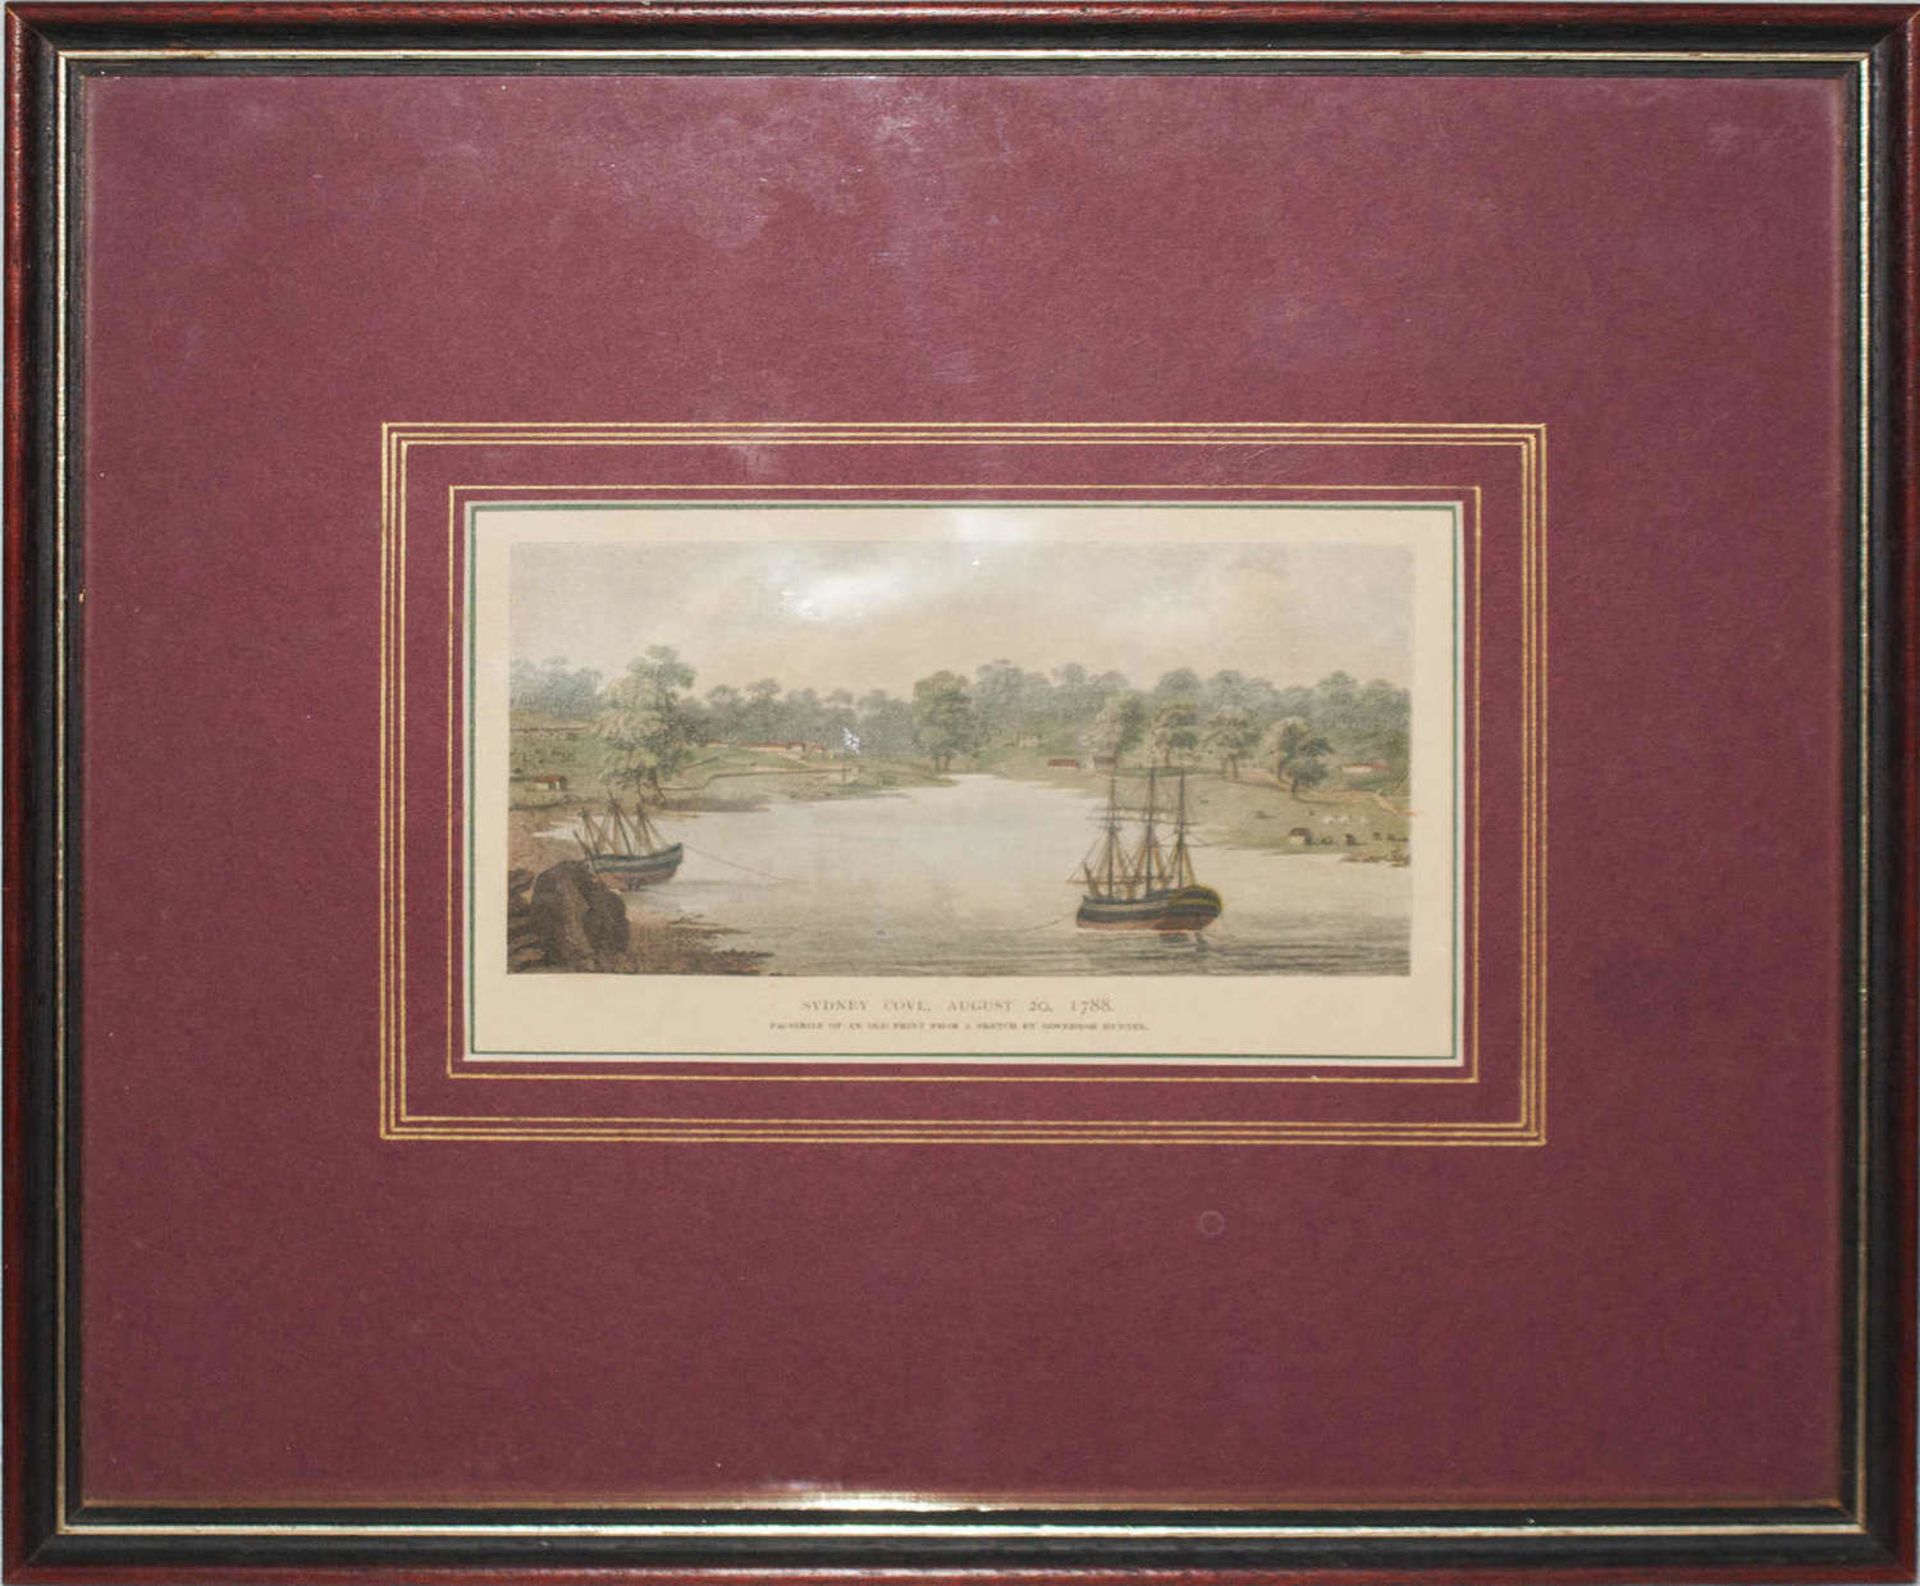 2 Drucke hinter Glas gerahmt. 1x Ansicht Kapstadt sowie 1x Sydney Cove August 20. 17882 prints - Bild 3 aus 3